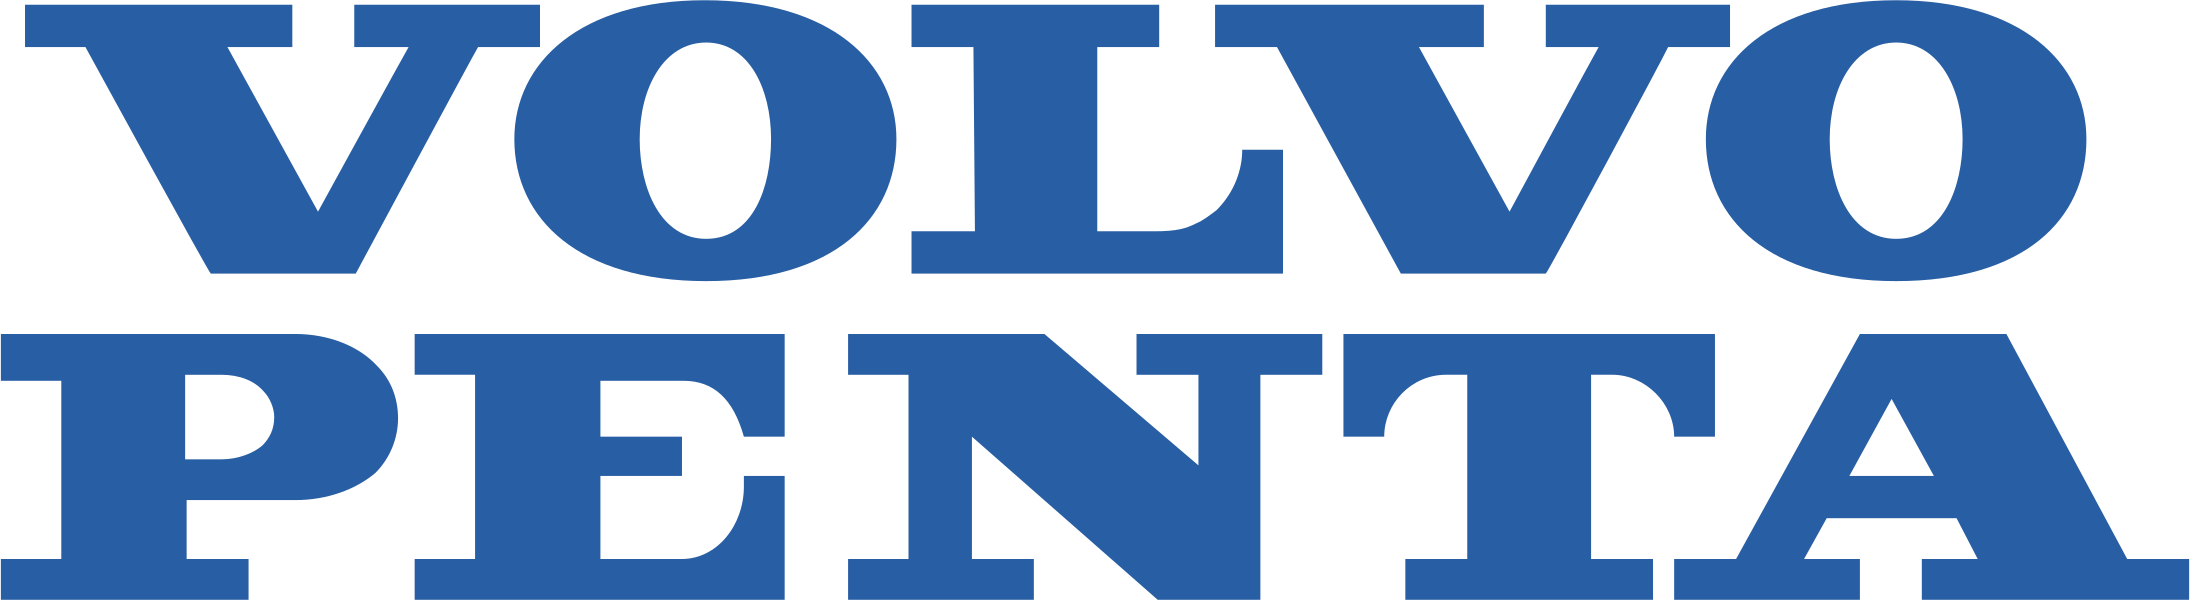 VolvoPenta-logo